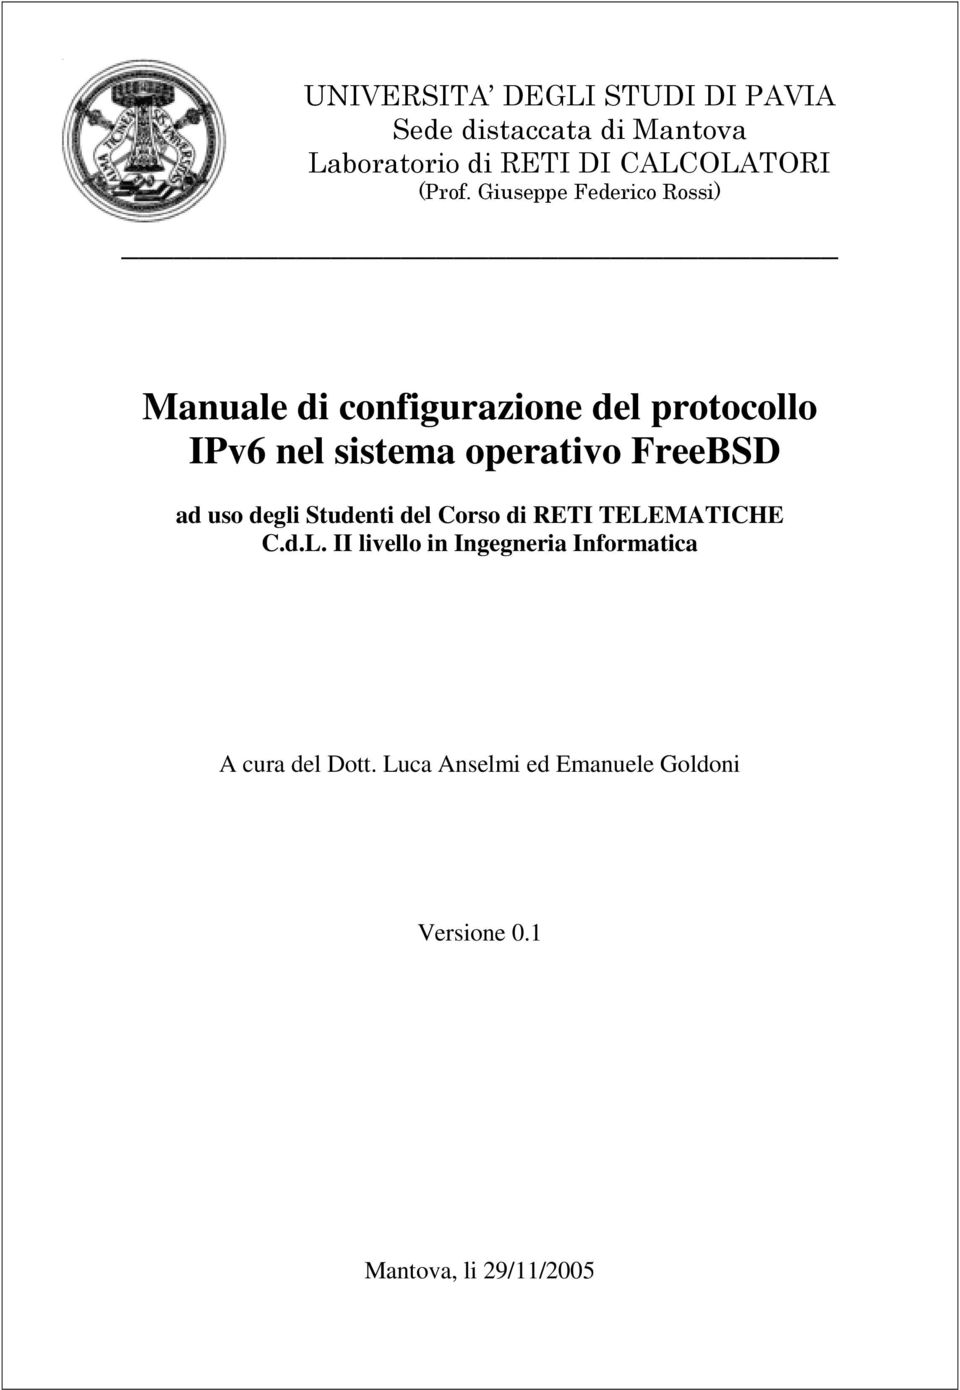 Giuseppe Federico Rossi) Manuale di configurazione del protocollo IPv6 nel sistema operativo